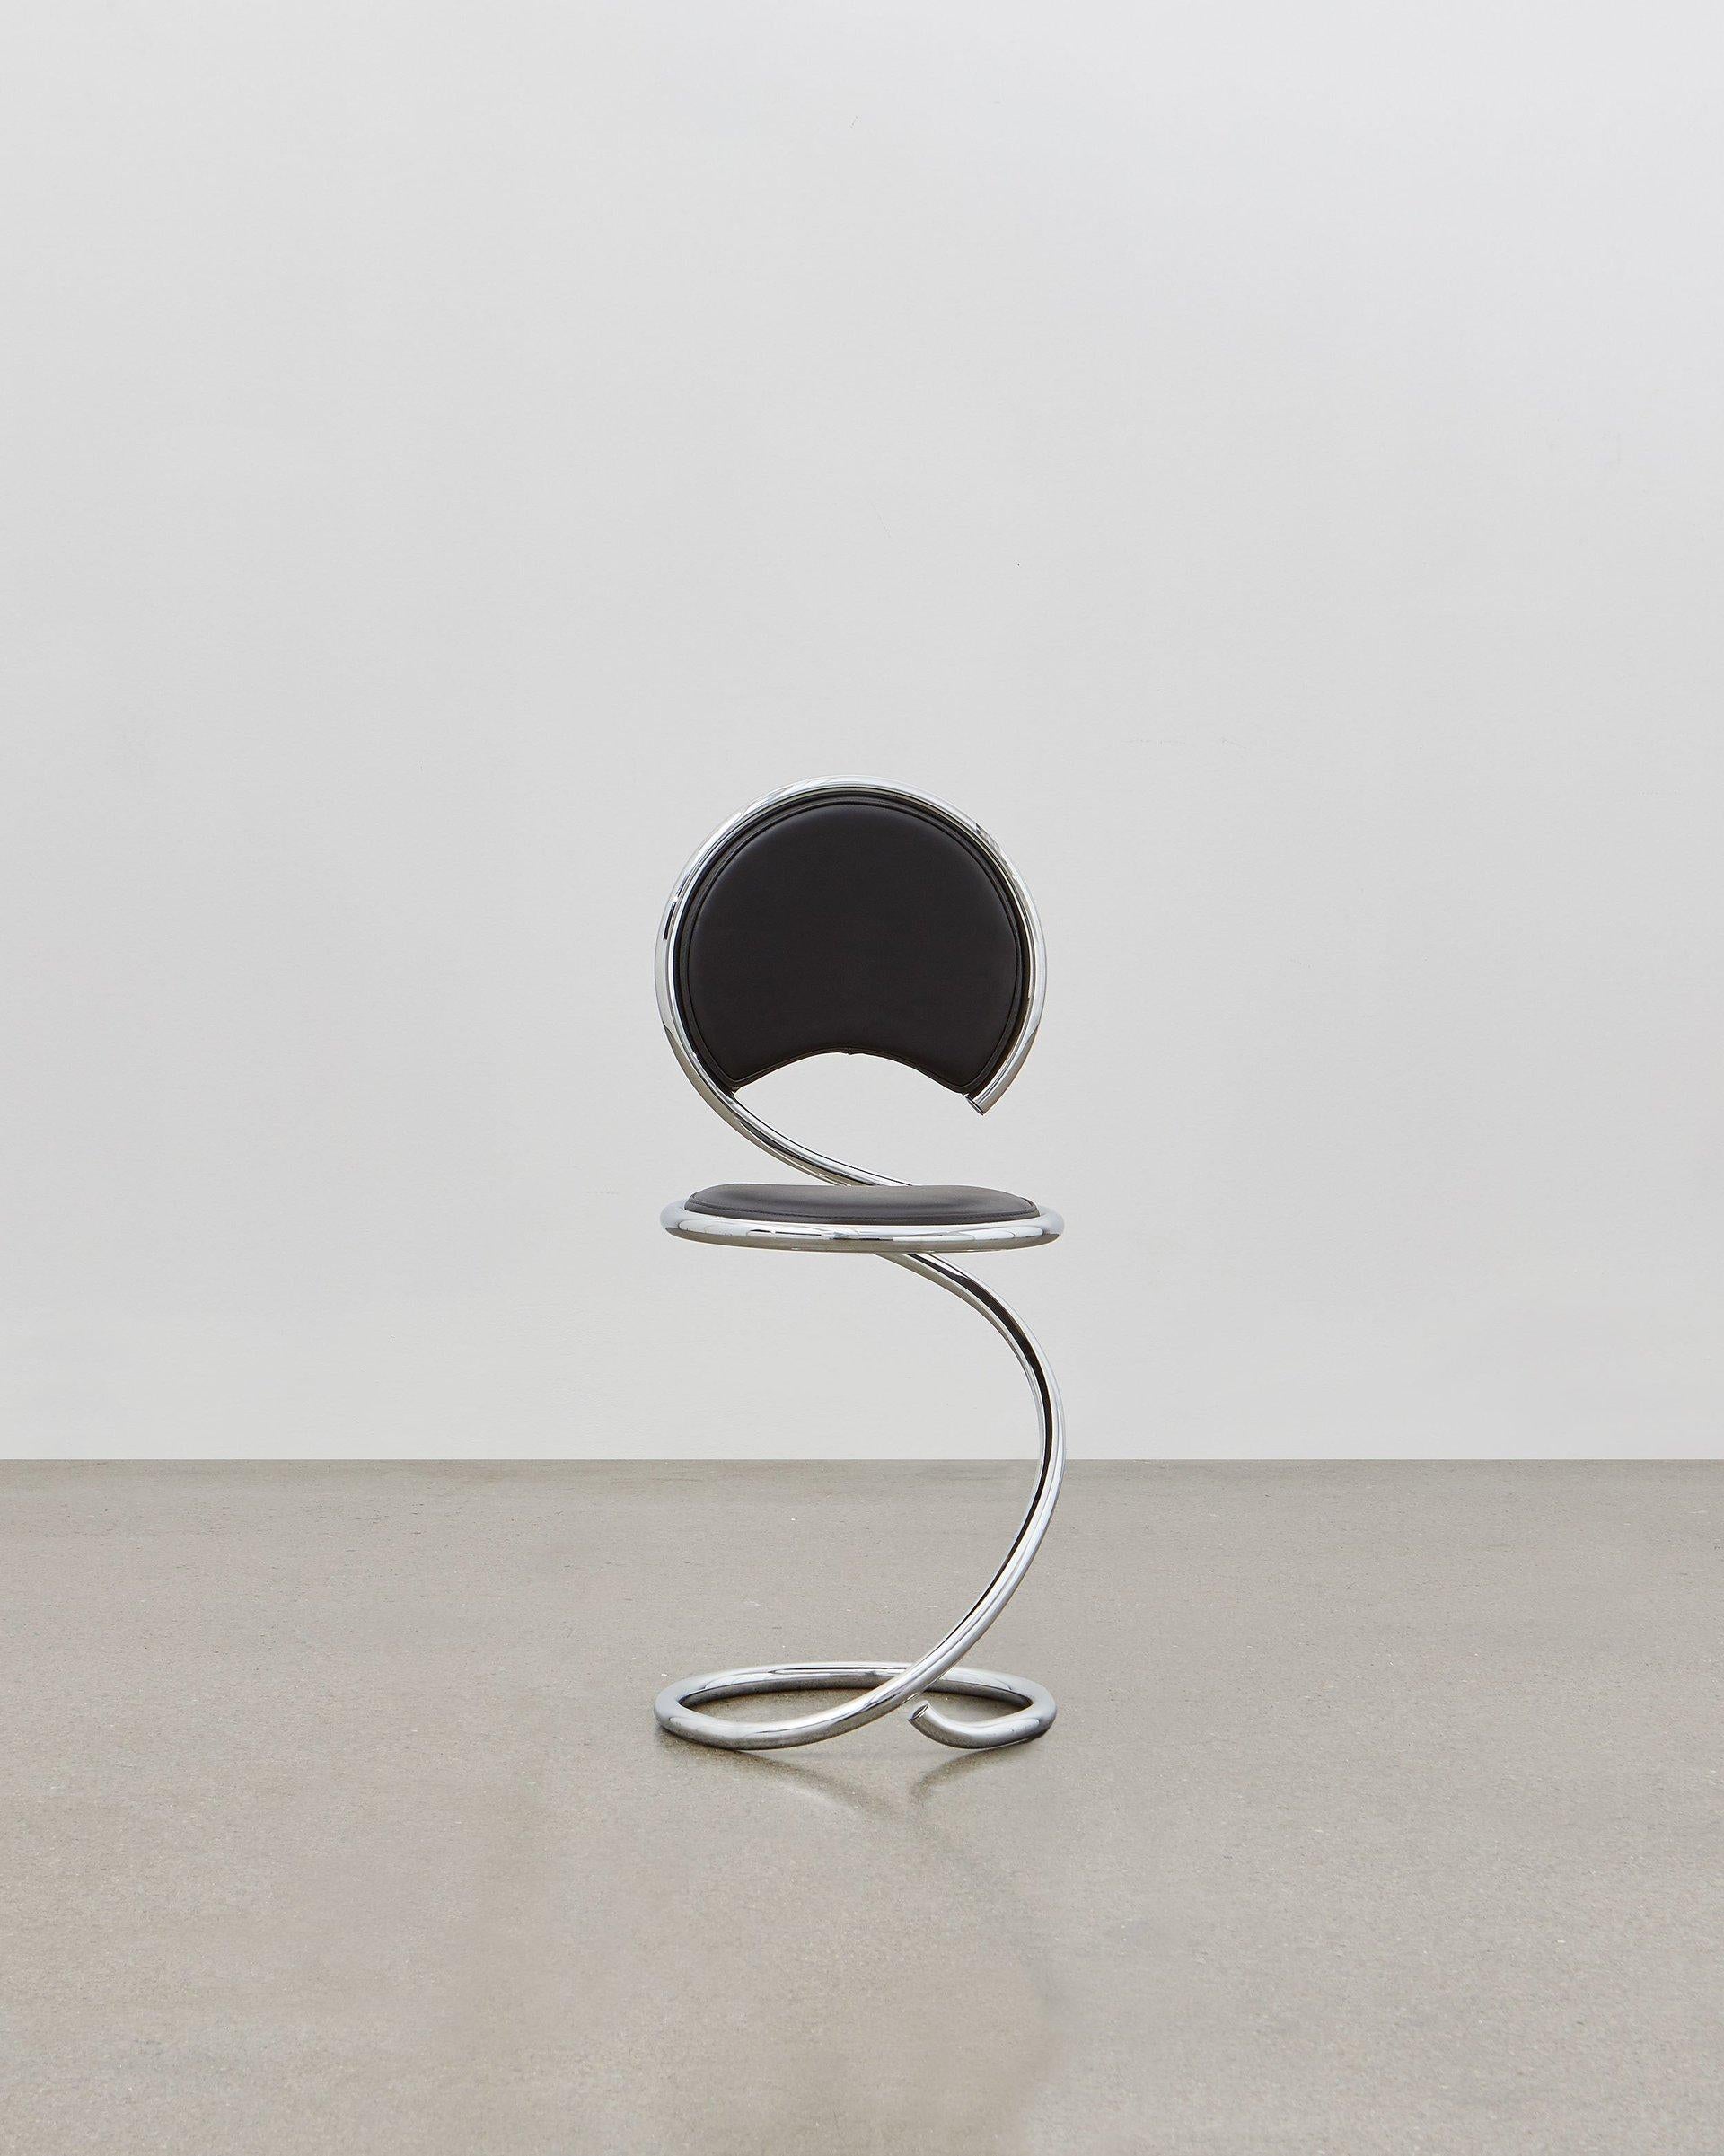 Les lignes fluides de la chaise PH Snake Chairs dans son design en tube d'acier sont inspirées par le corps fort mais flexible d'un serpent. Il est polyvalent et s'adapte à toutes les pièces de la maison, de l'appartement, du bureau, avec une